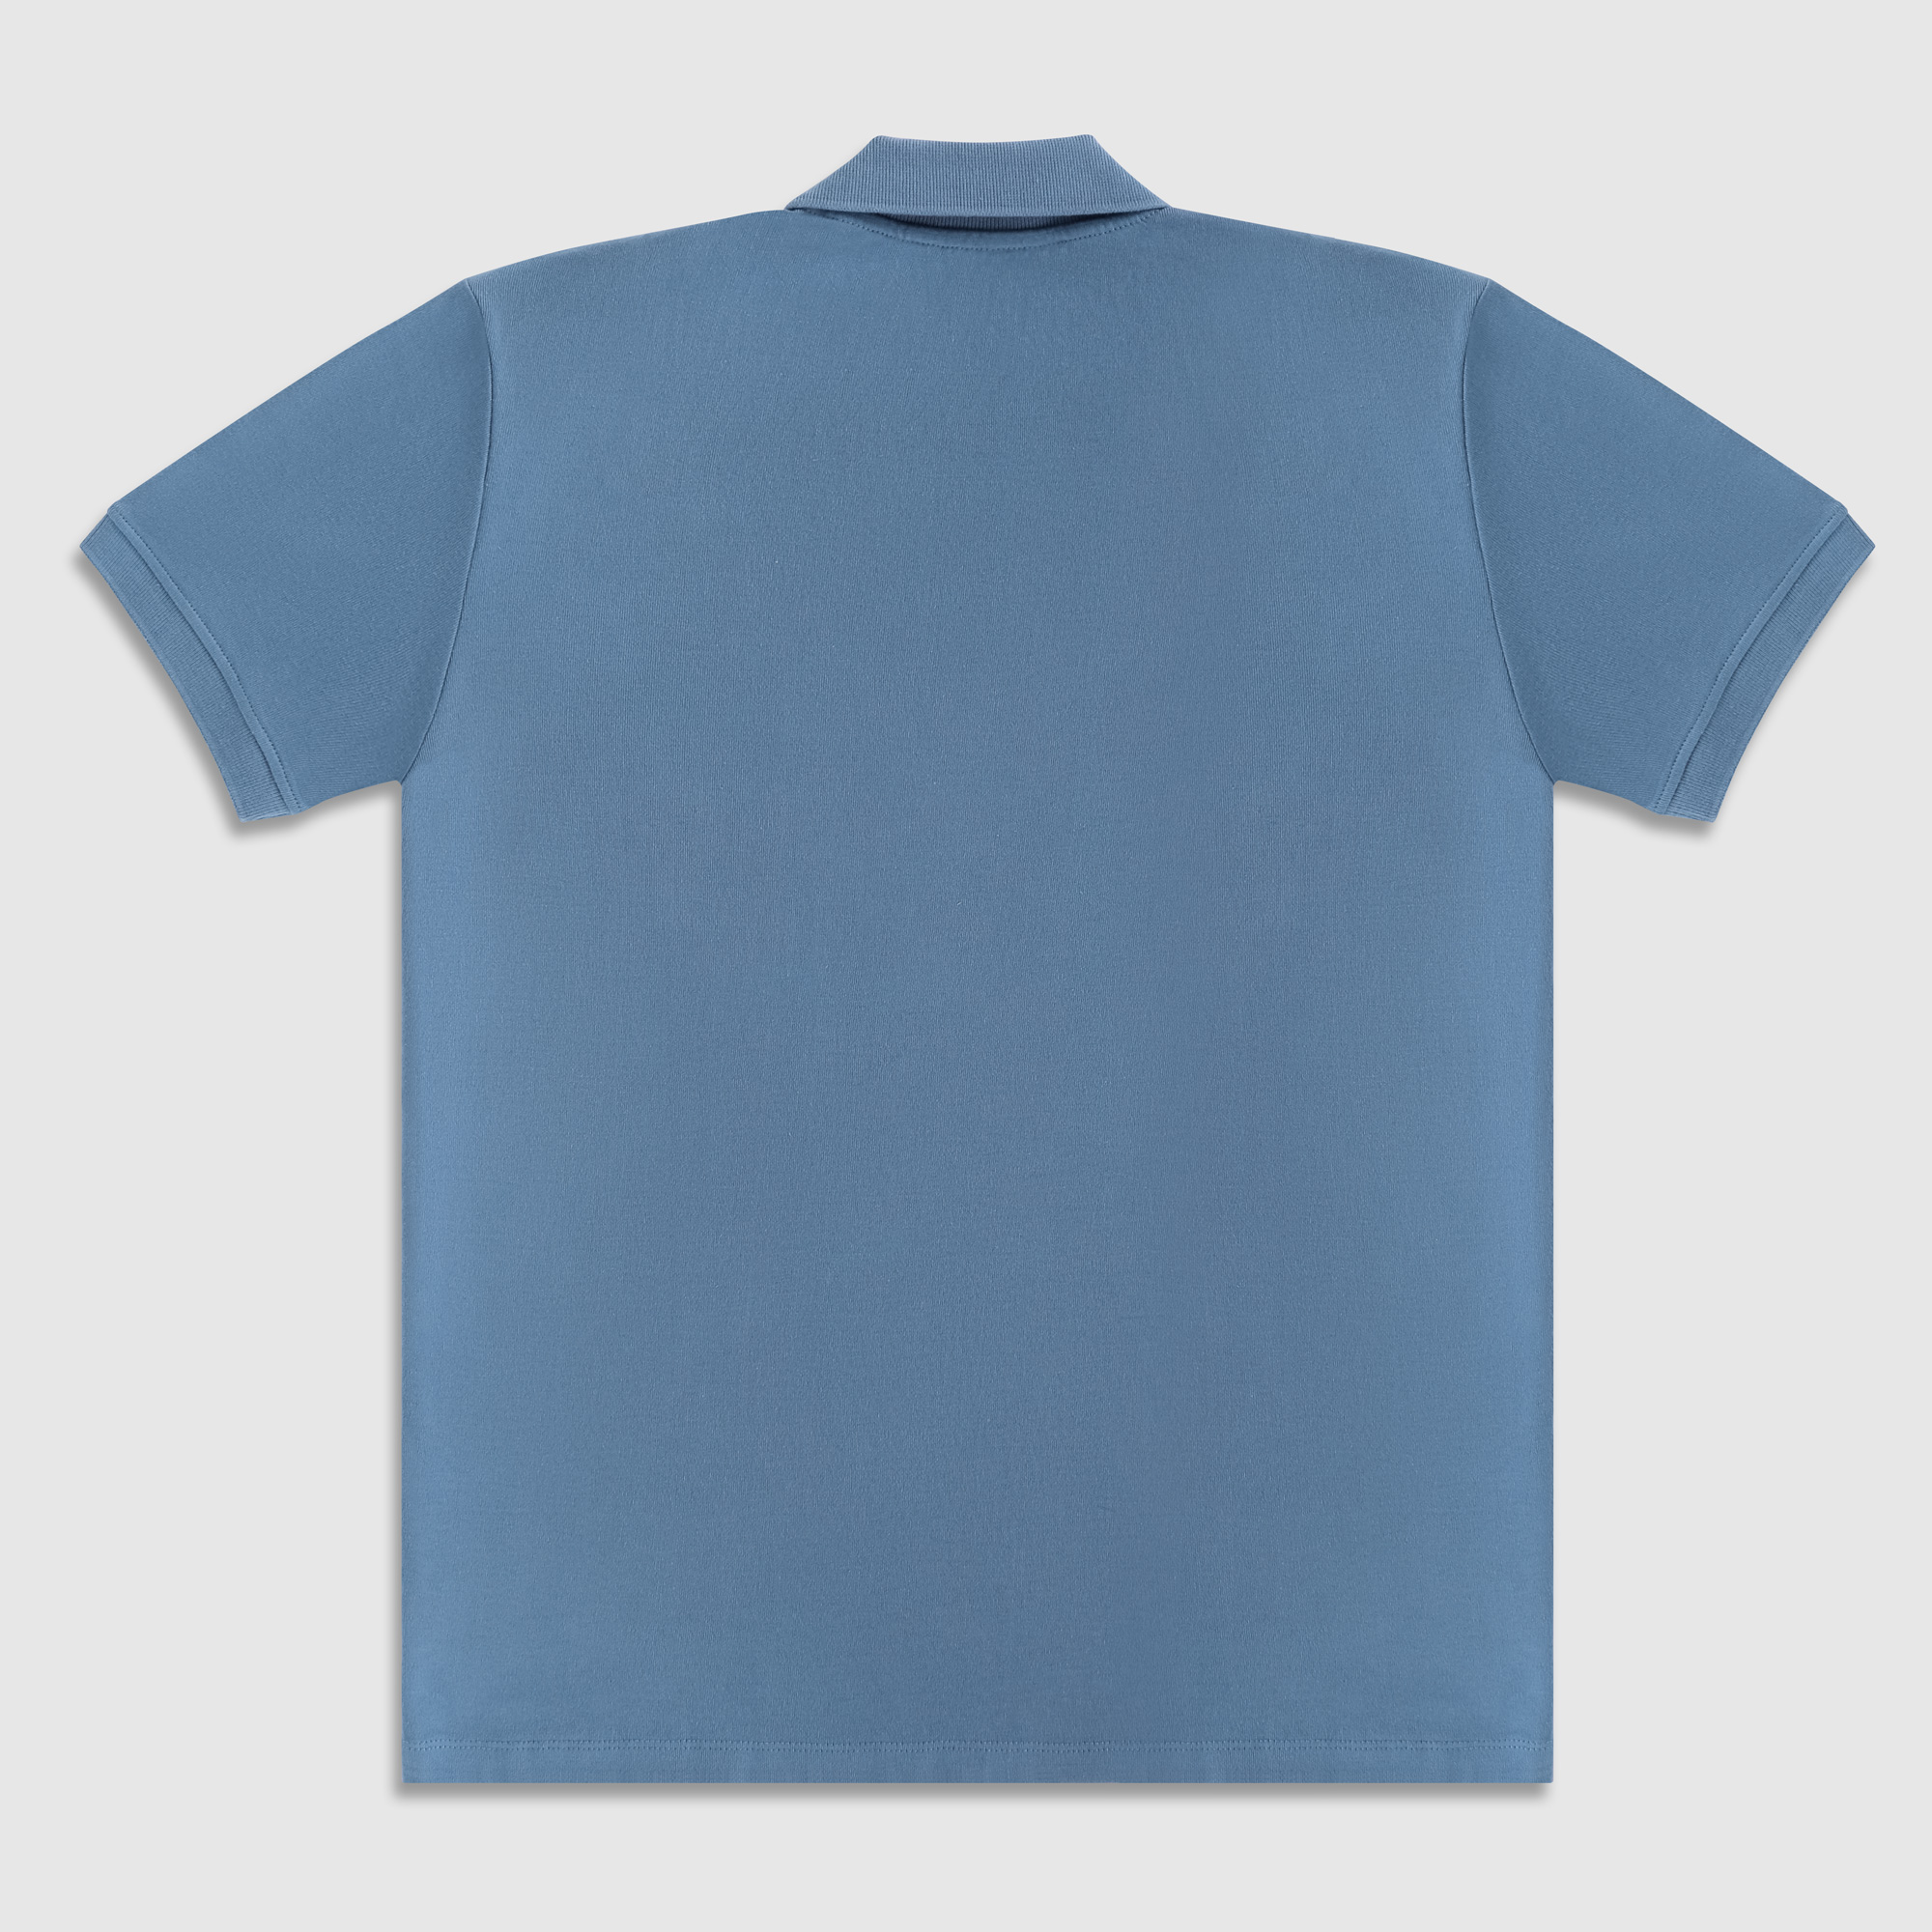 Рубашка мужская Diva Teks поло голубая, цвет голубой, размер XL - фото 2